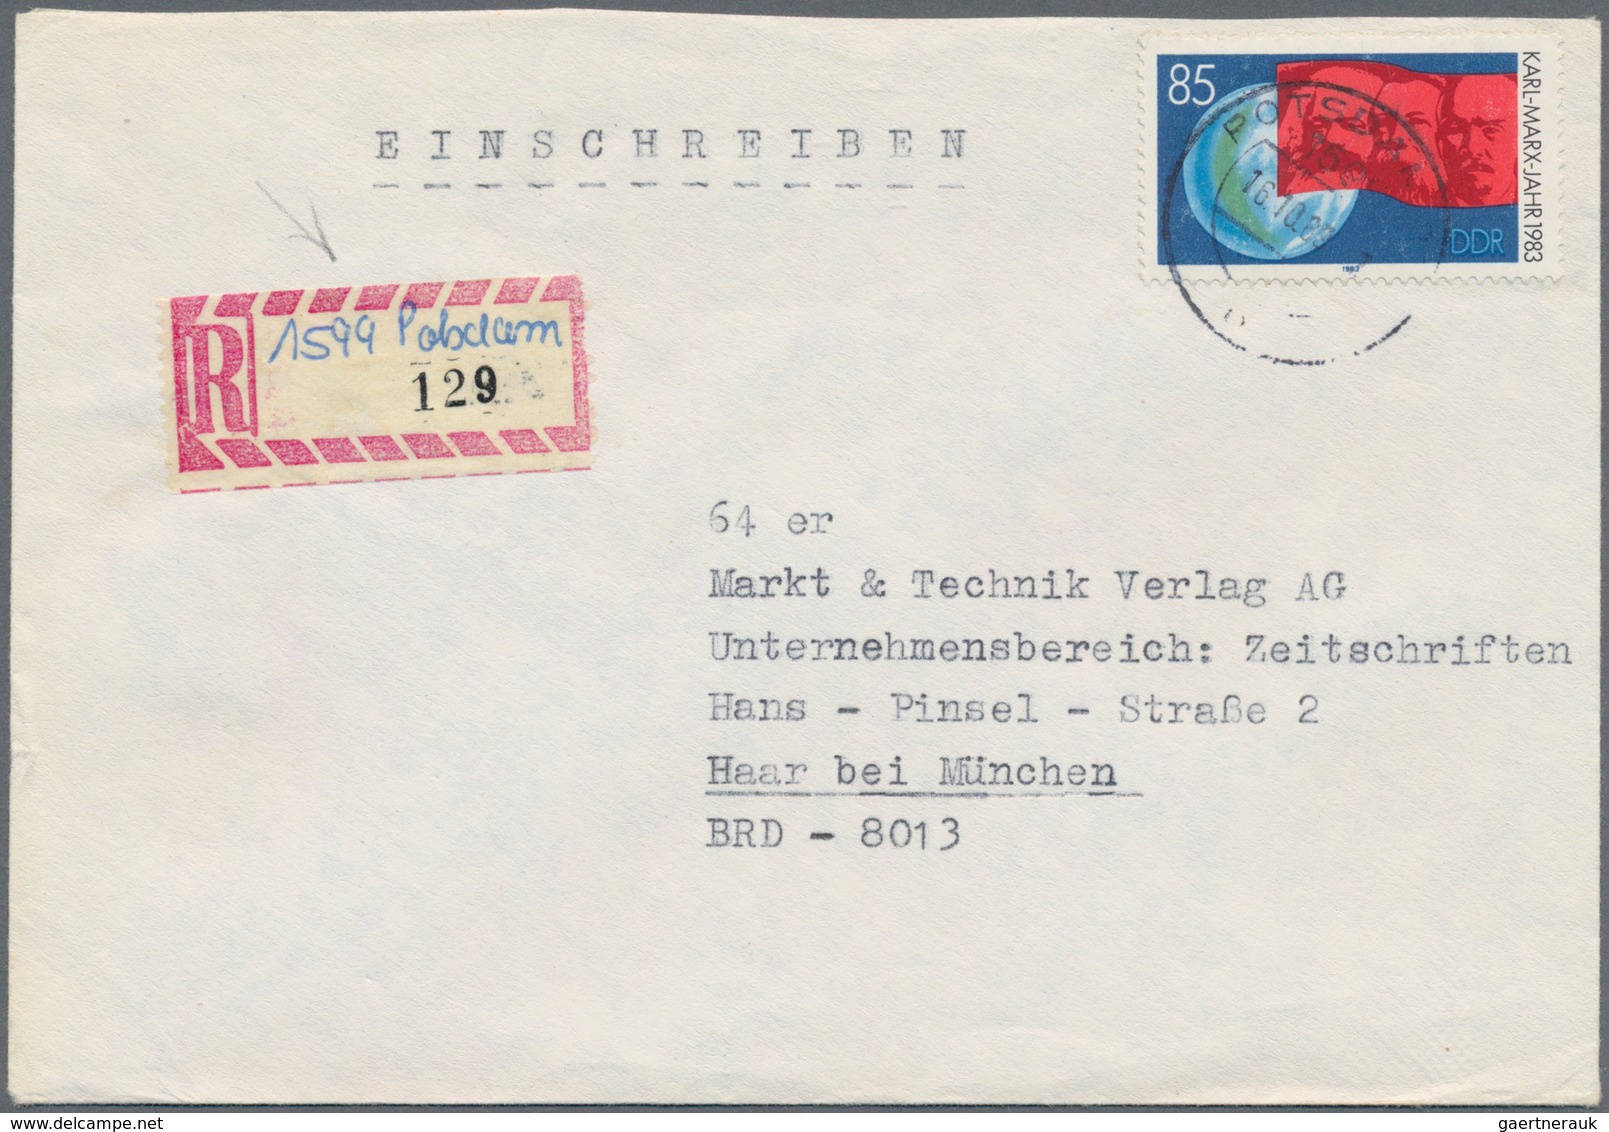 DDR: 1948/1990, vielseitige Partie von ca. 420 Briefen und Karten, dabei bessere Fankaturen der Anfa